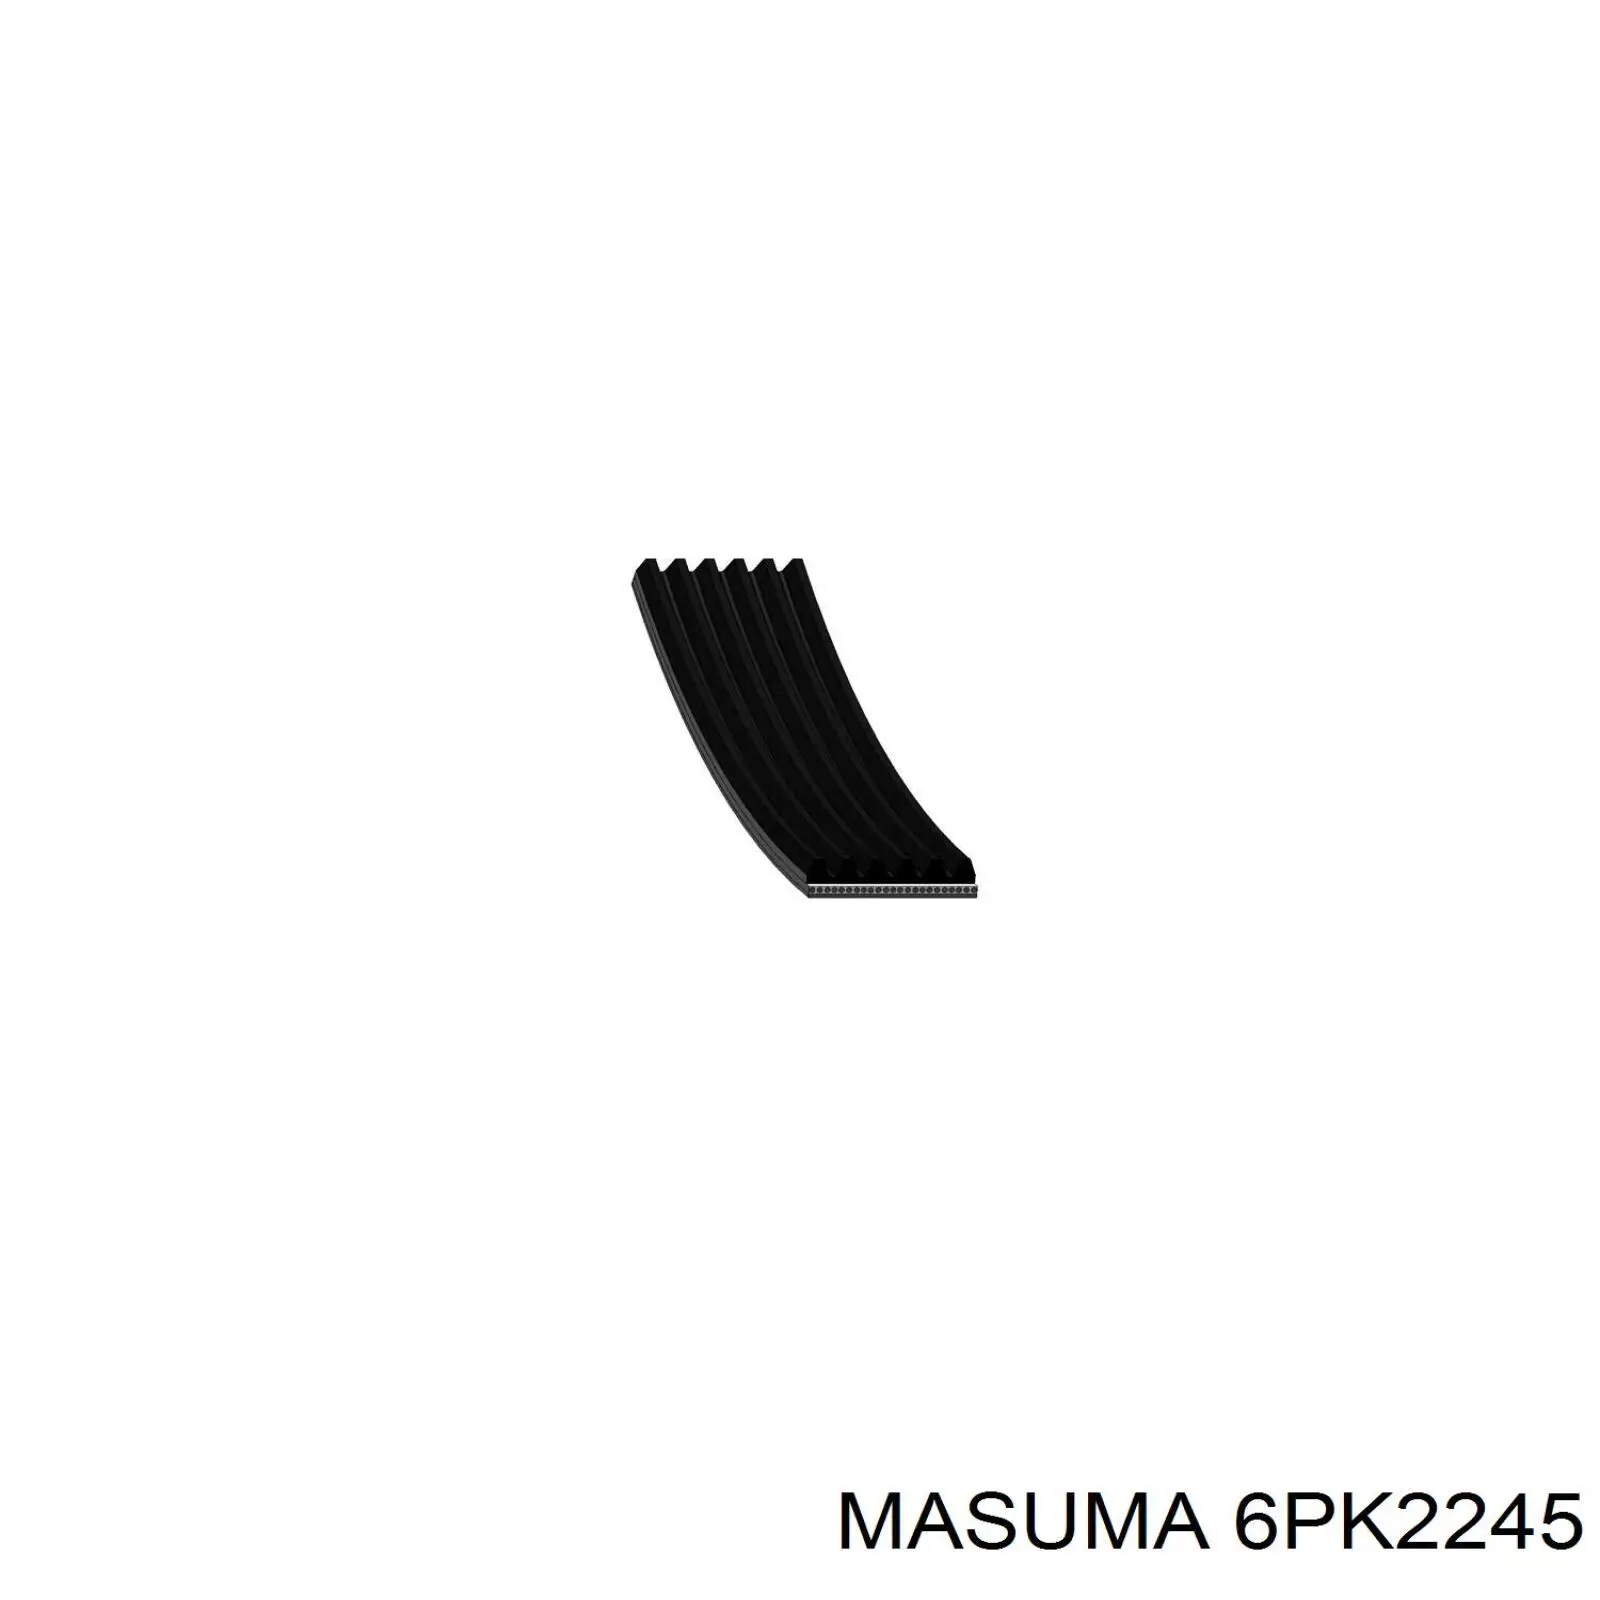 6PK2245 Masuma correa trapezoidal